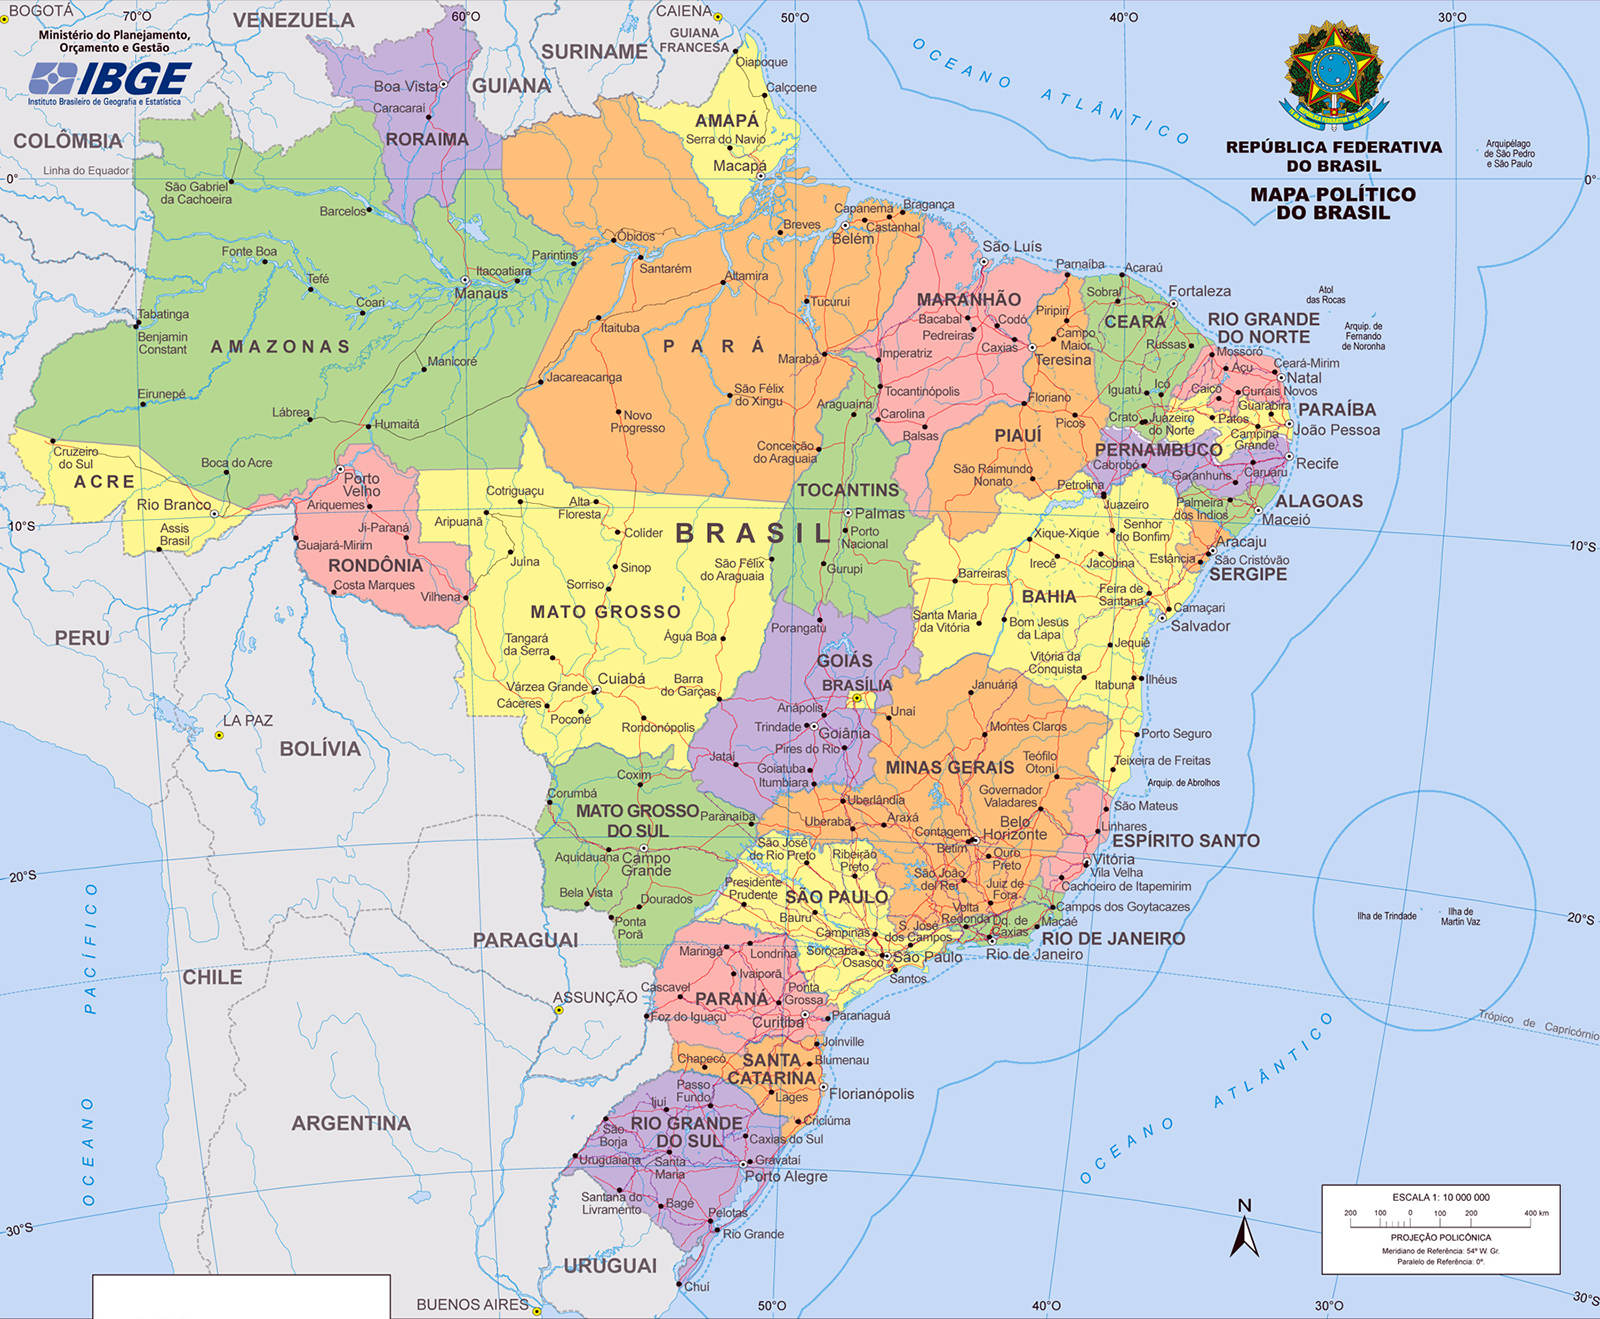 [Imagen: mapa-politico-do-brasil.jpg]